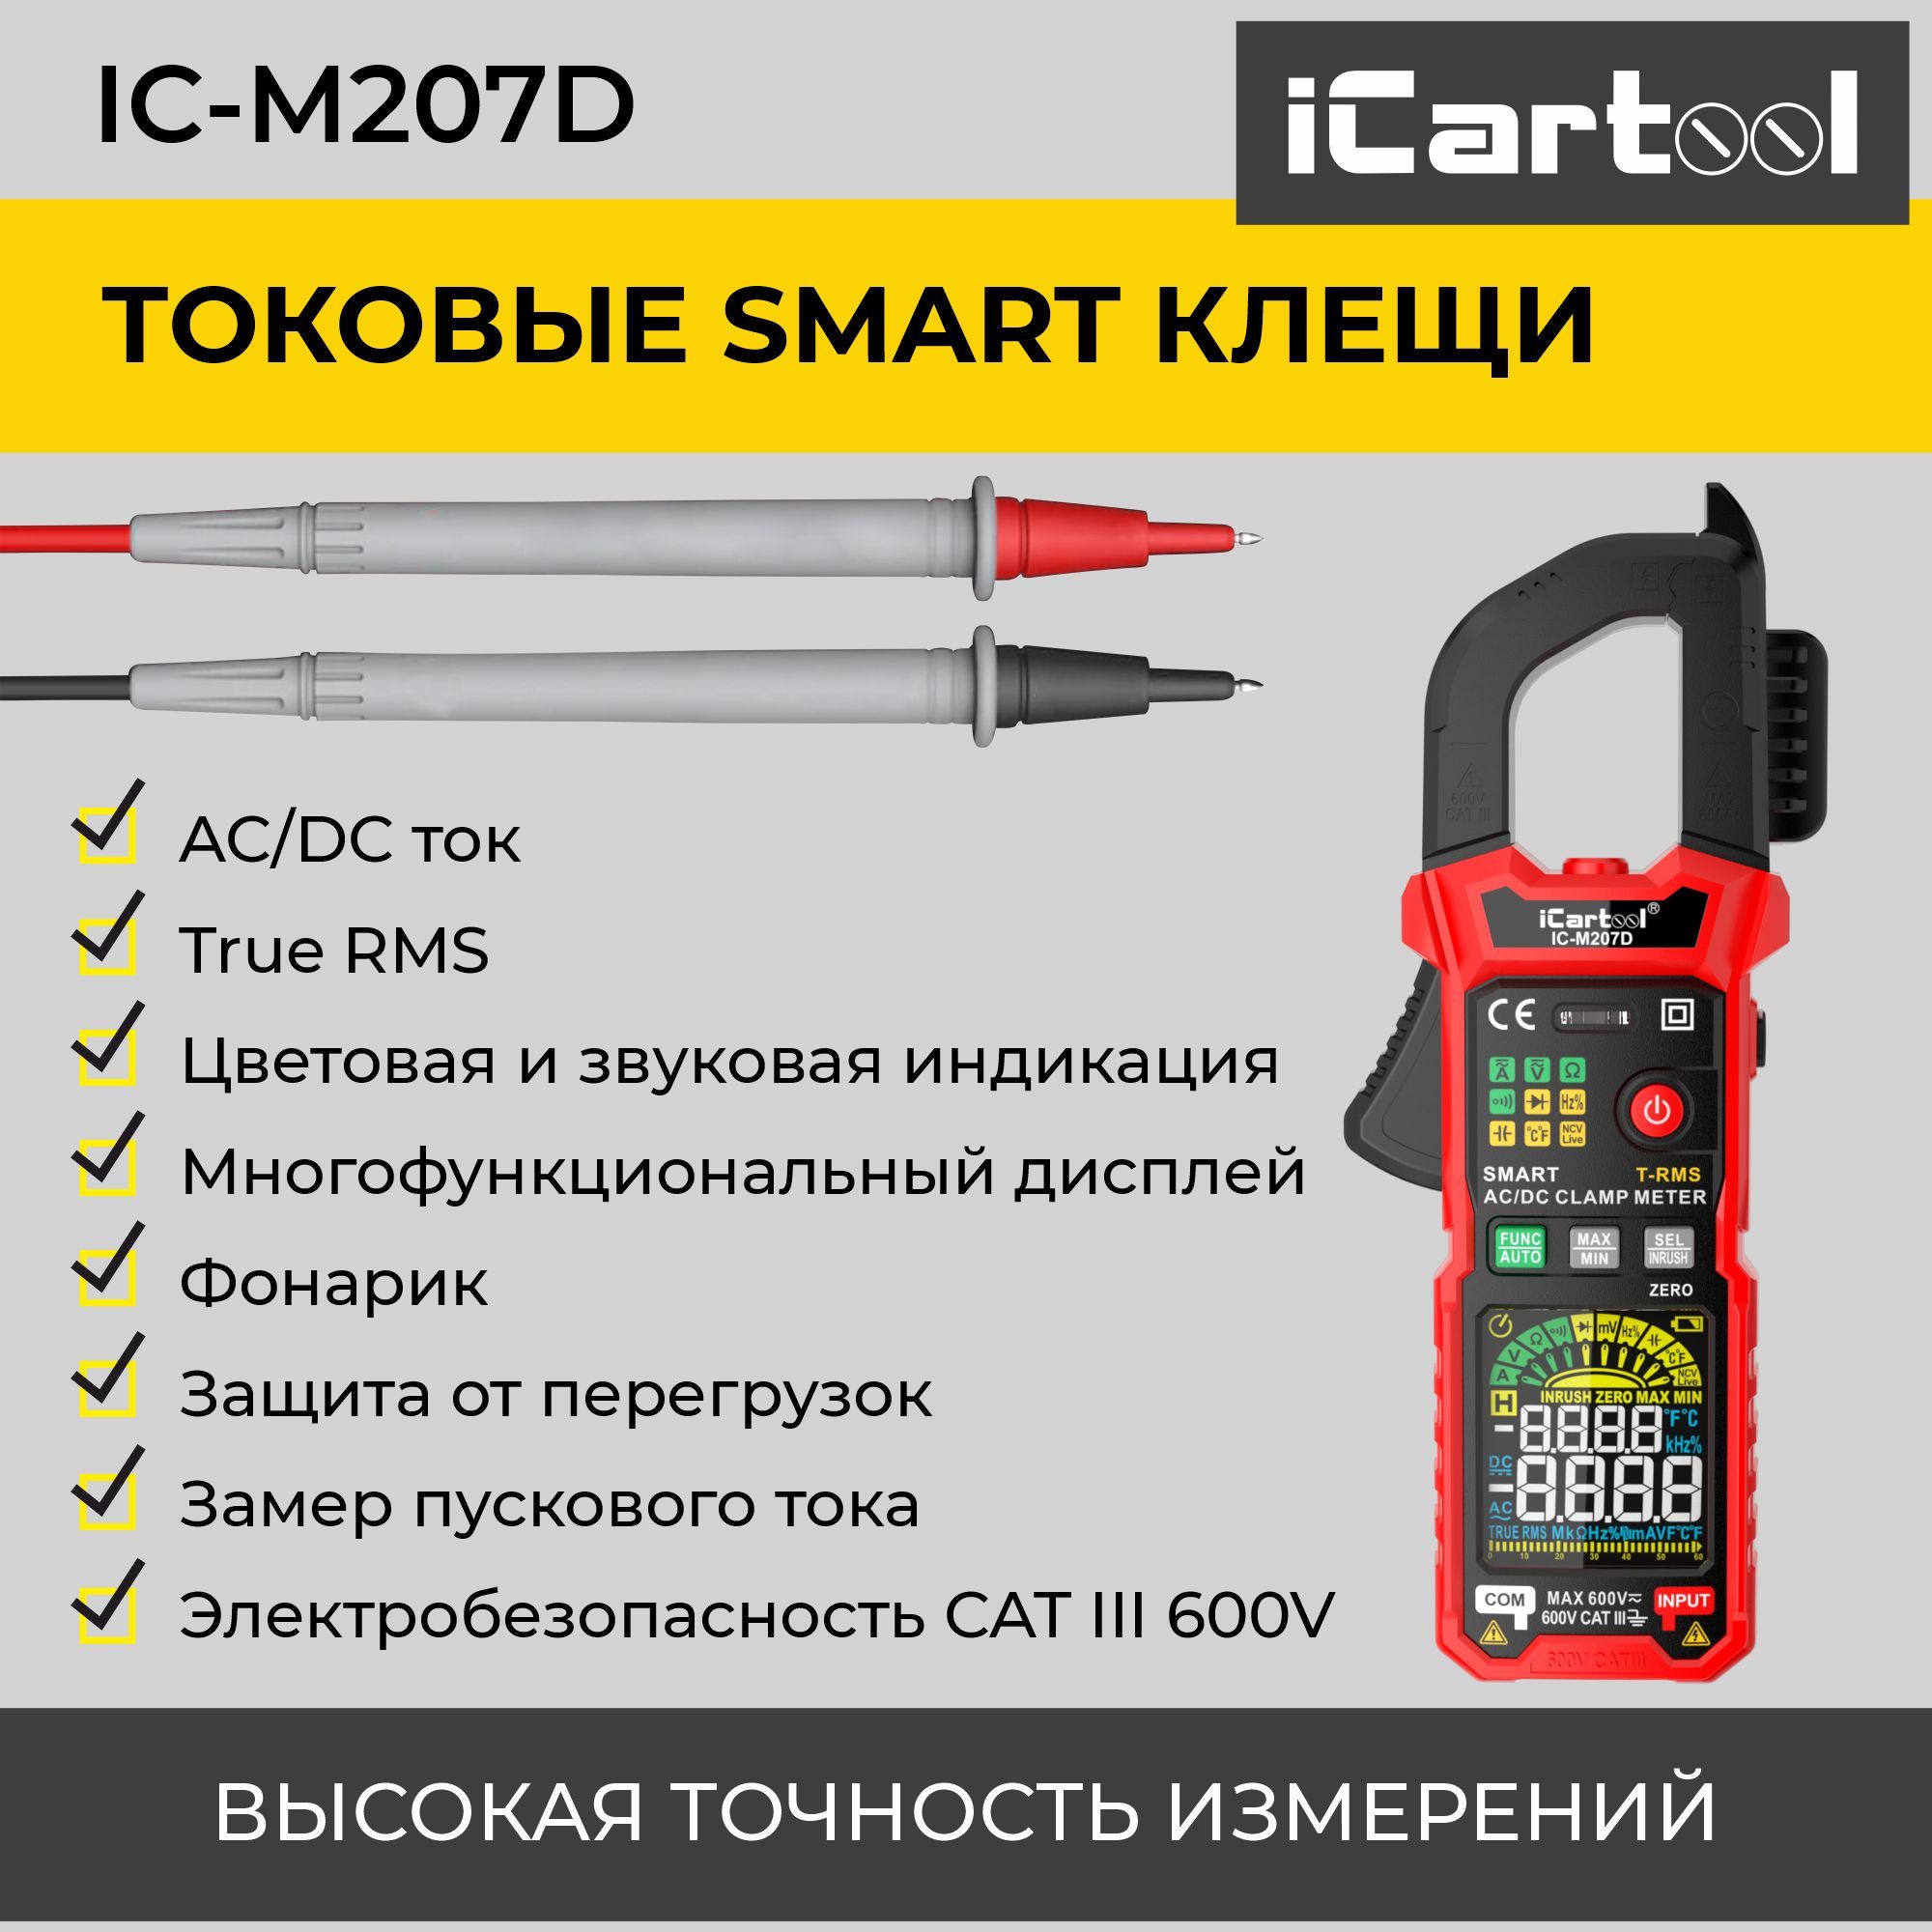 Токовые клещи iCartool IC-M207D постоянного/переменного тока 600A c режимом смарт токовые клещи мультиметр сем